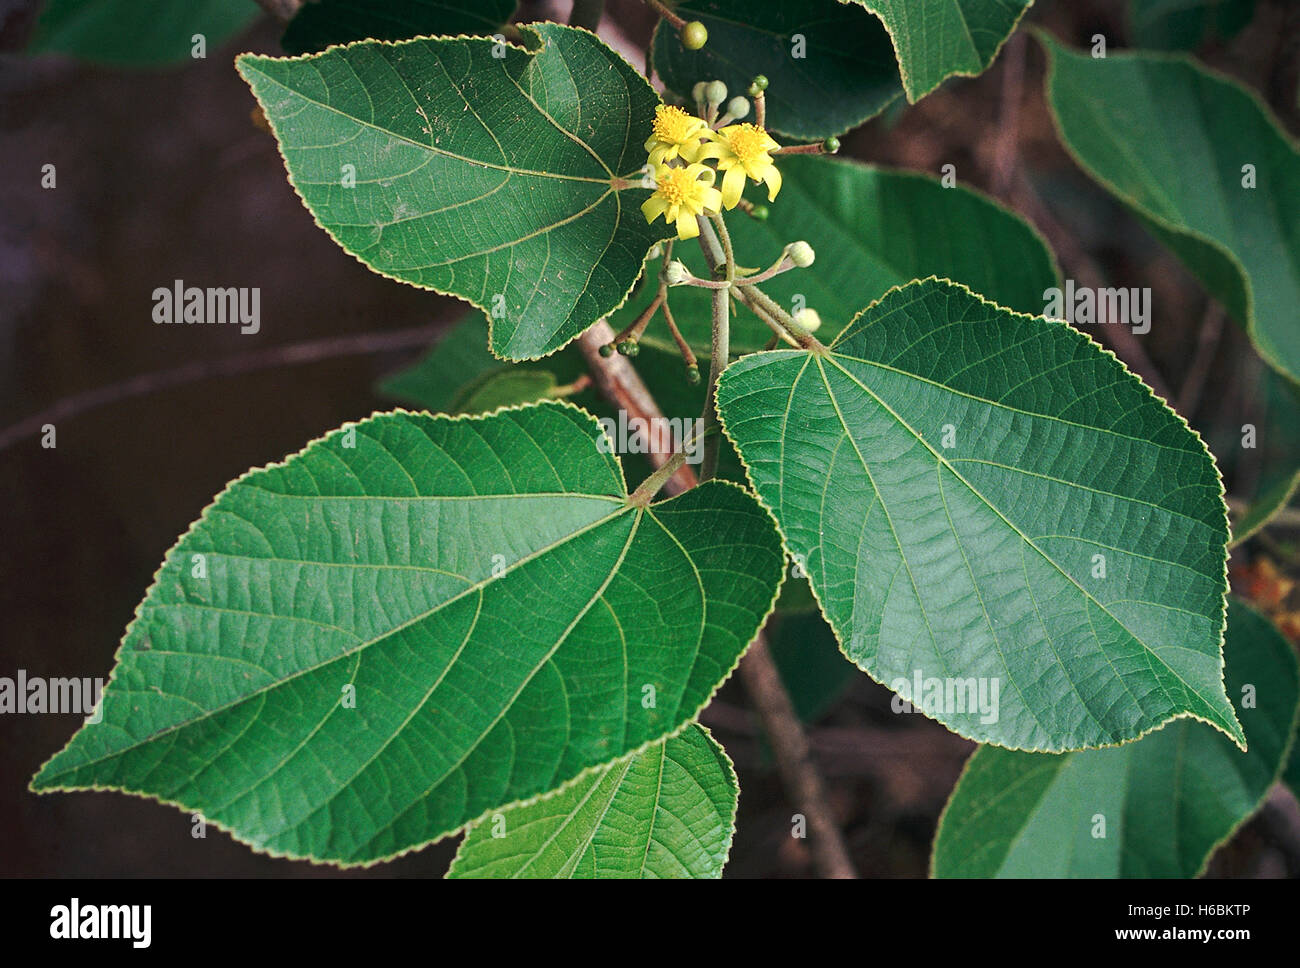 Blumen. grewia tiliaefolia. Familie: tiliaceae. Ein mittelgrosser Laubbaum mit starken flexibles Holz. Stockfoto